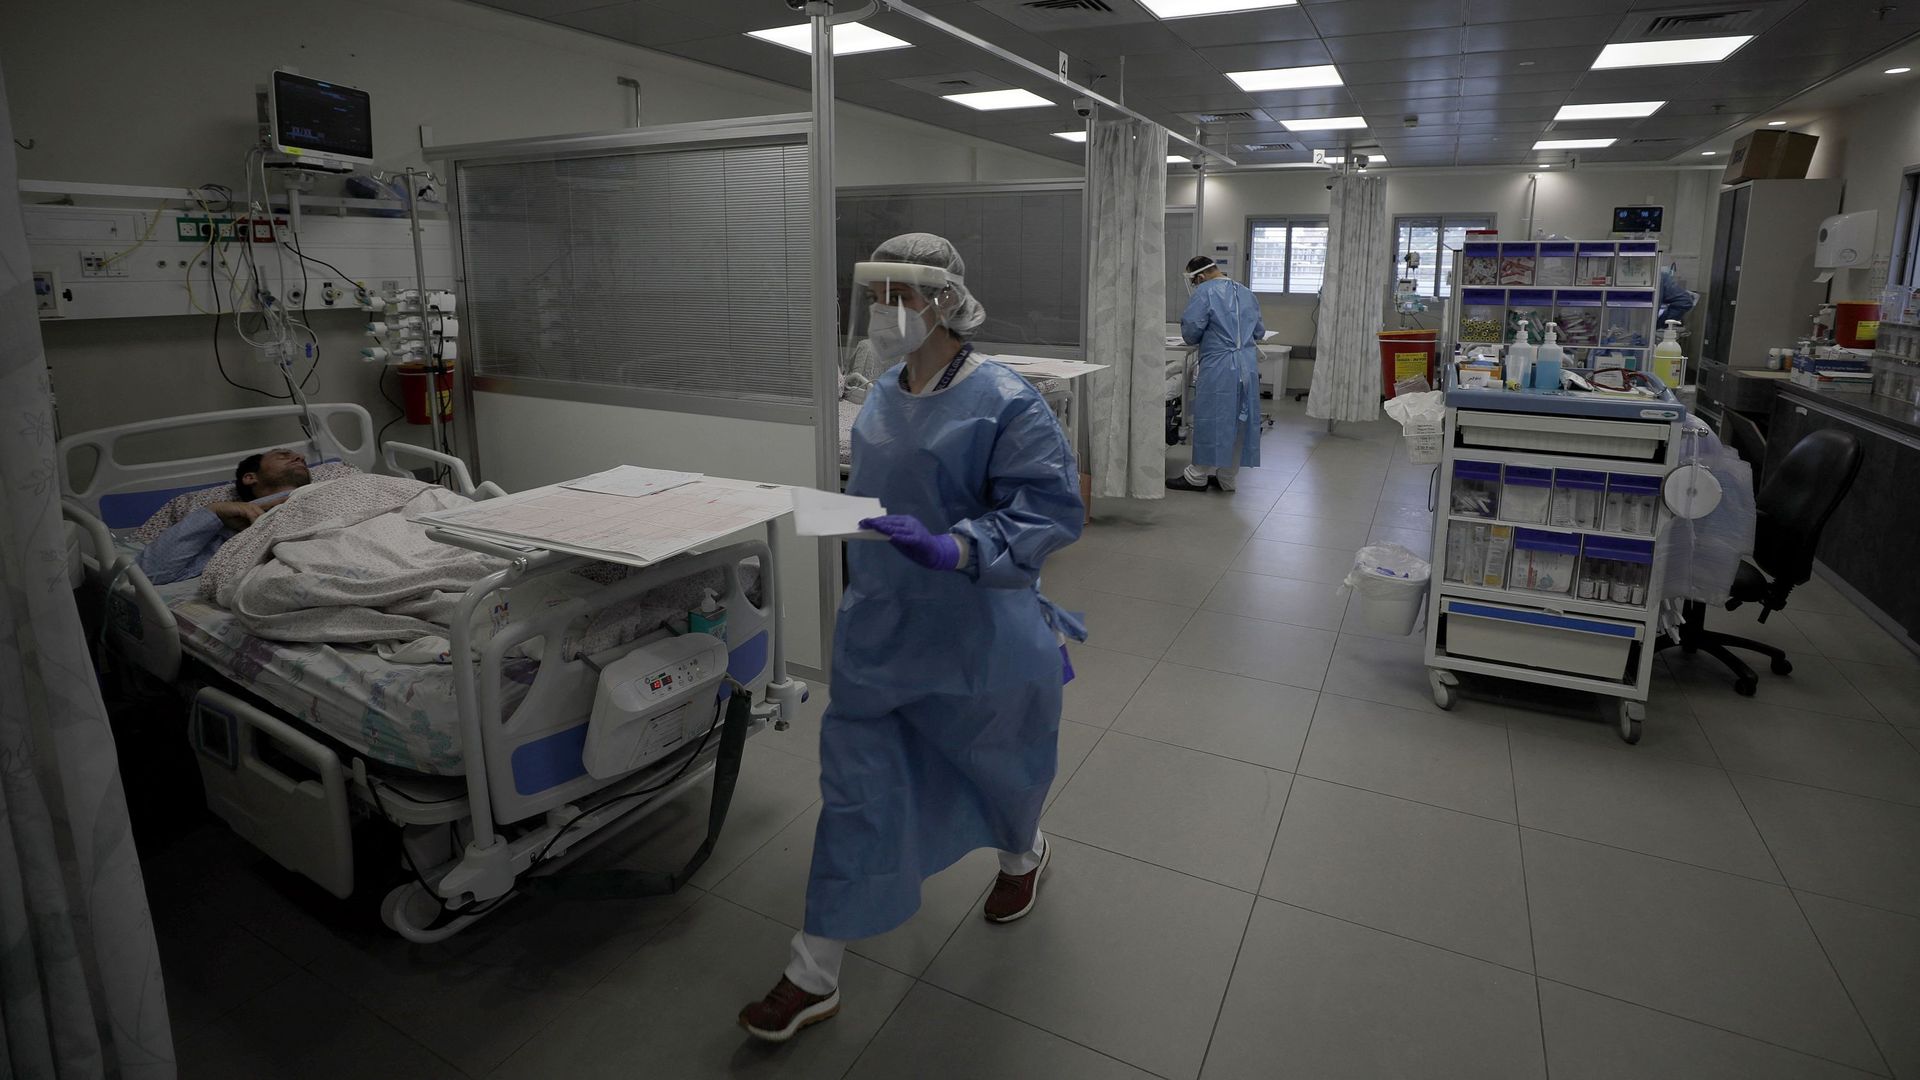 Des travailleurs médicaux israéliens et des patients atteints de Covid-19 sont photographiés à l'intérieur d'une salle d'isolement du coronavirus au centre médical Ziv dans la ville de Safed, dans le nord d'Israël, le 16 janvier 2022